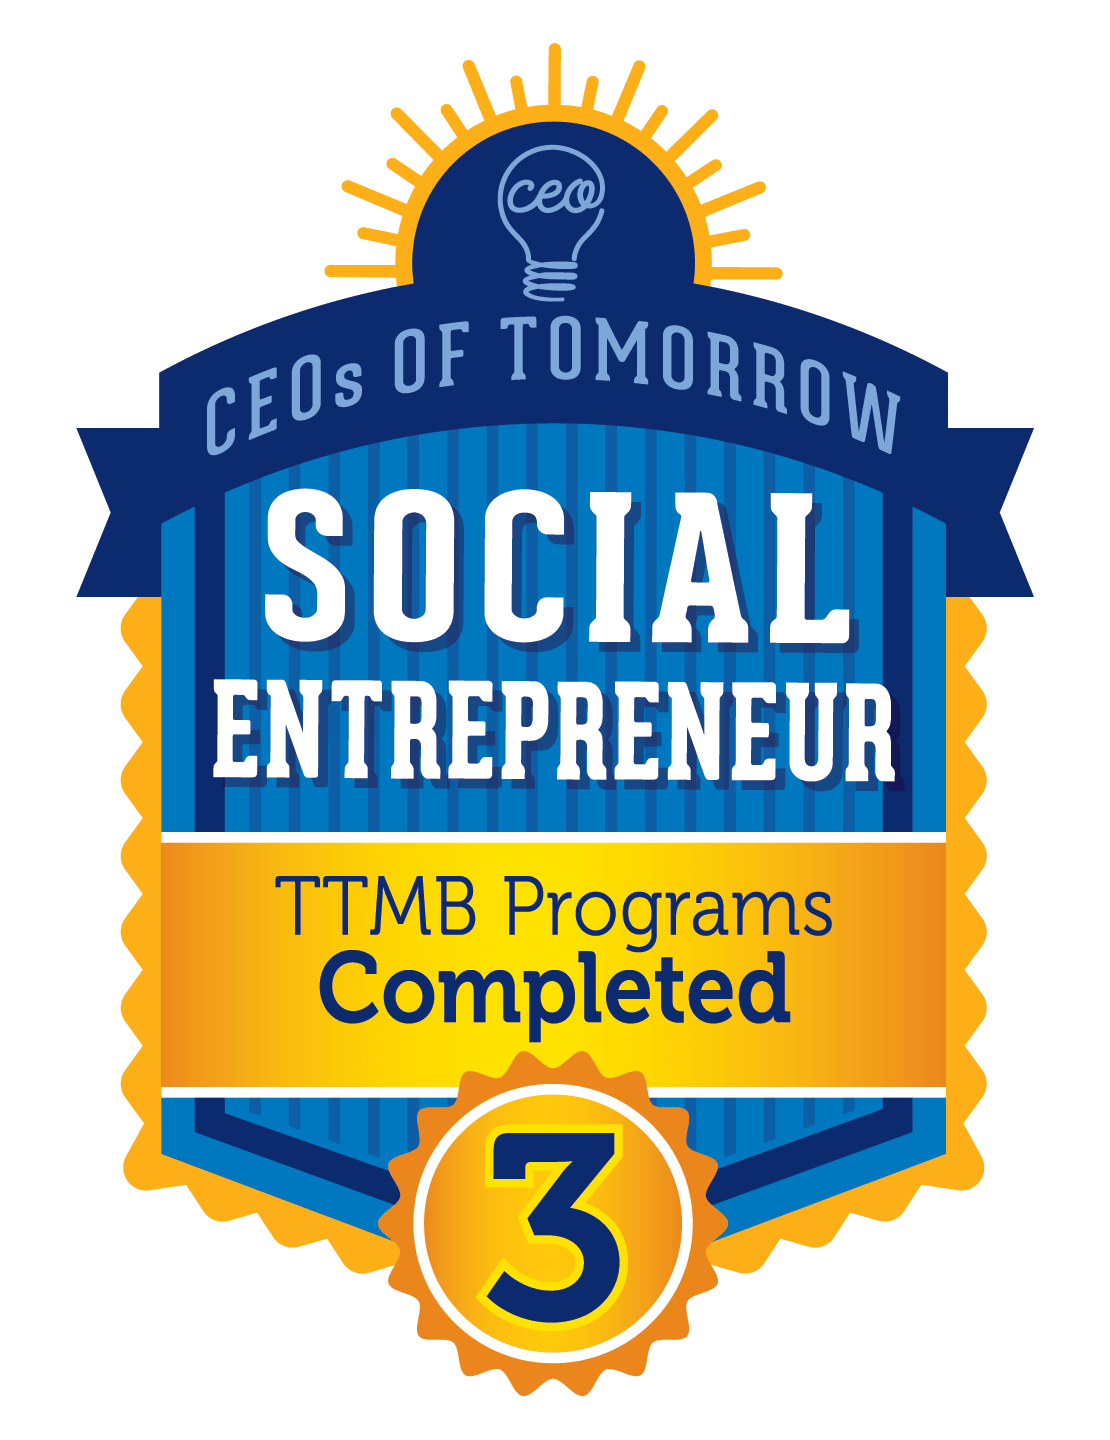 Social Entrepreneur - 3 TTMB Programs Completed